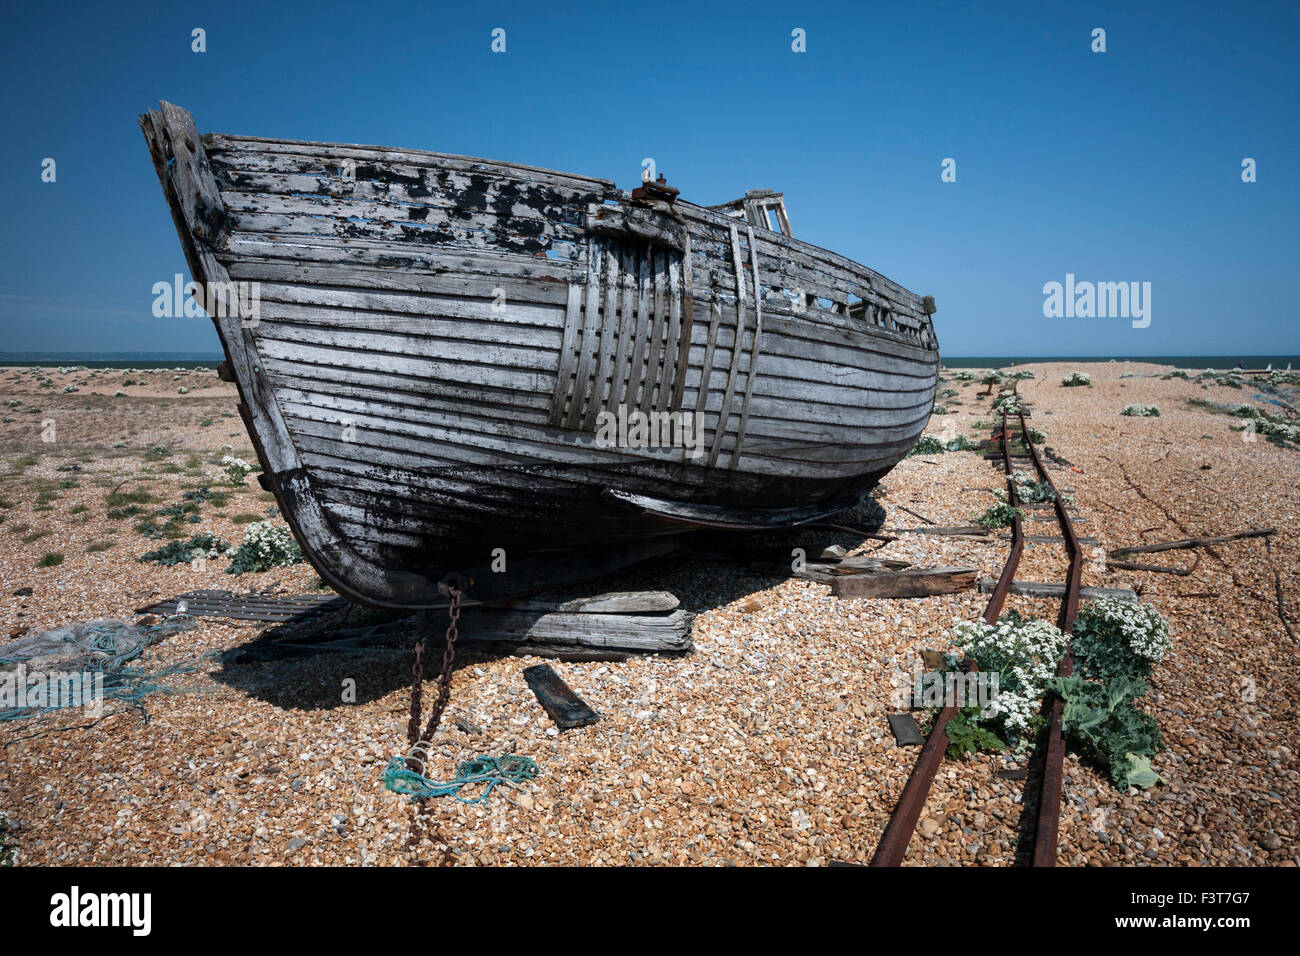 Abandoned fishing boat on the shingle beach, Dungeness, Kent, England, UK Stock Photo